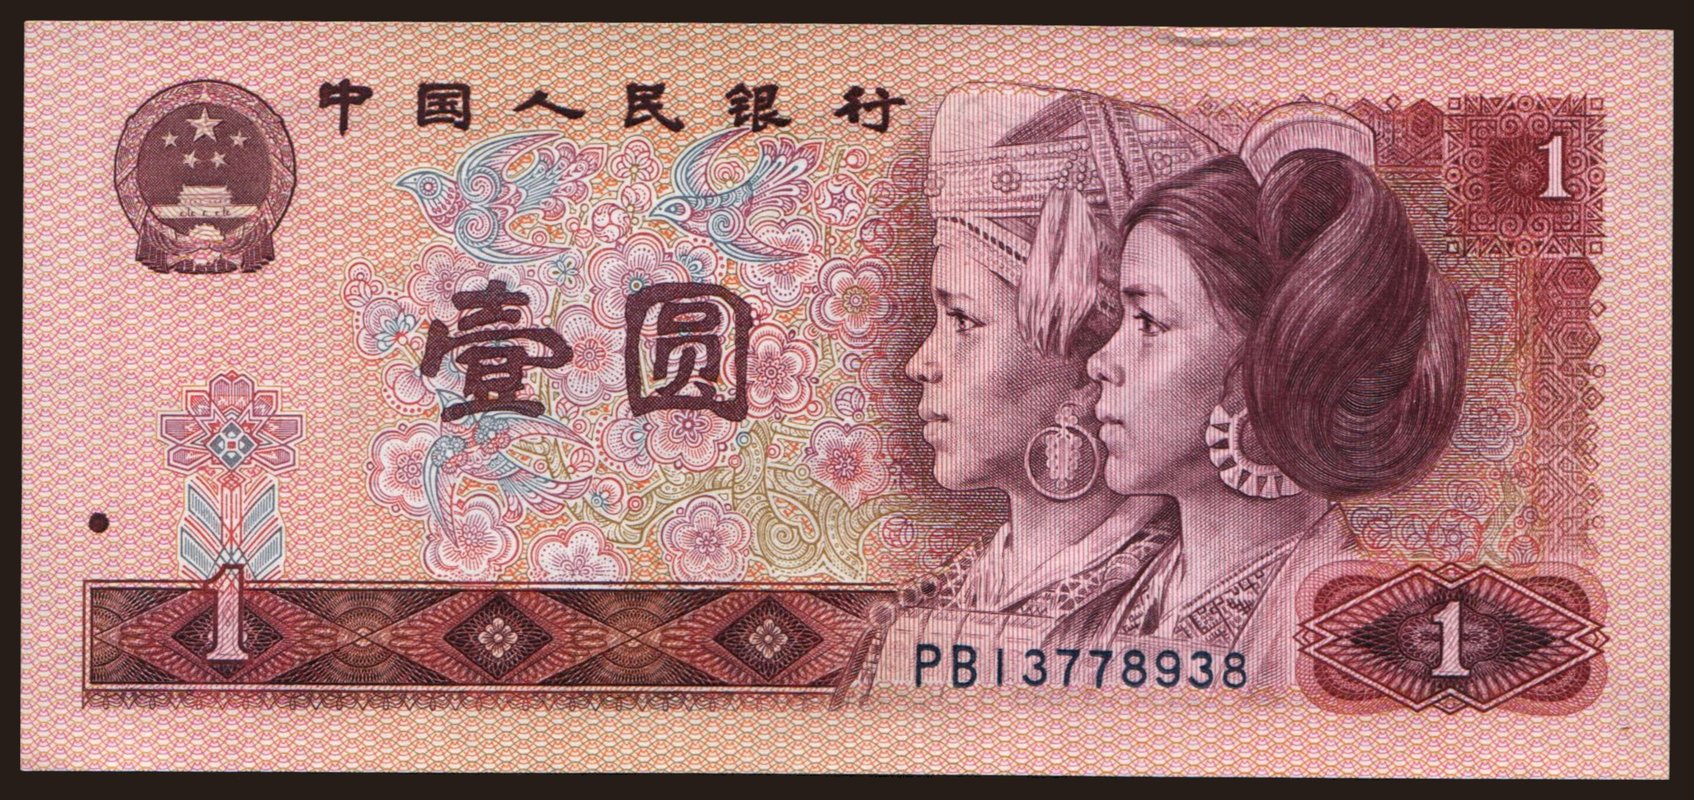 Купюра 1996. Китайские банкноты 1980. Банкнота 1 юань Китай. Юань 1980 года. Банкнота 1 юань Китай 1996.